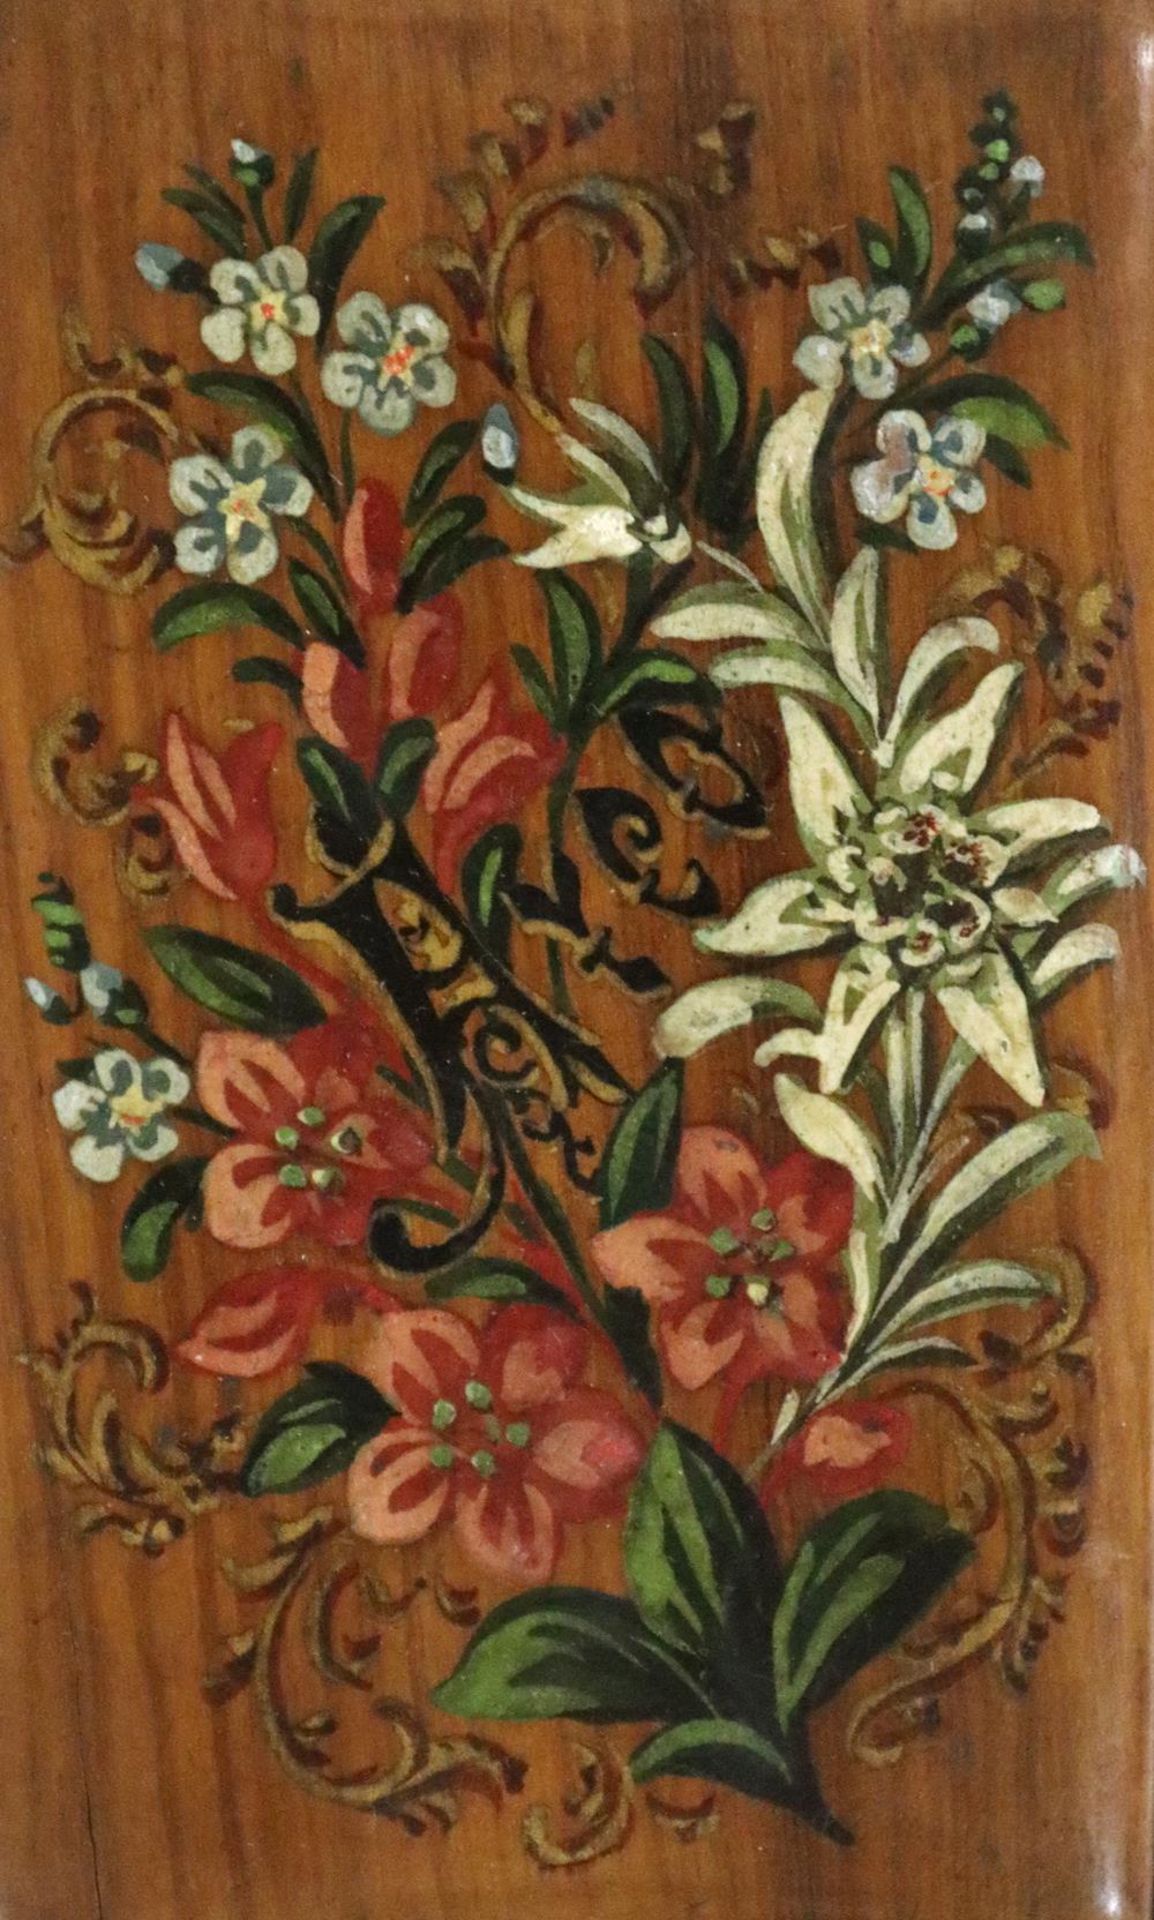 KonvolutKonvolut mit 3 Holzkladden m. versch. Dekors. 2 davon m. z.T. bunten IntarsienaKonv - Bild 2 aus 3